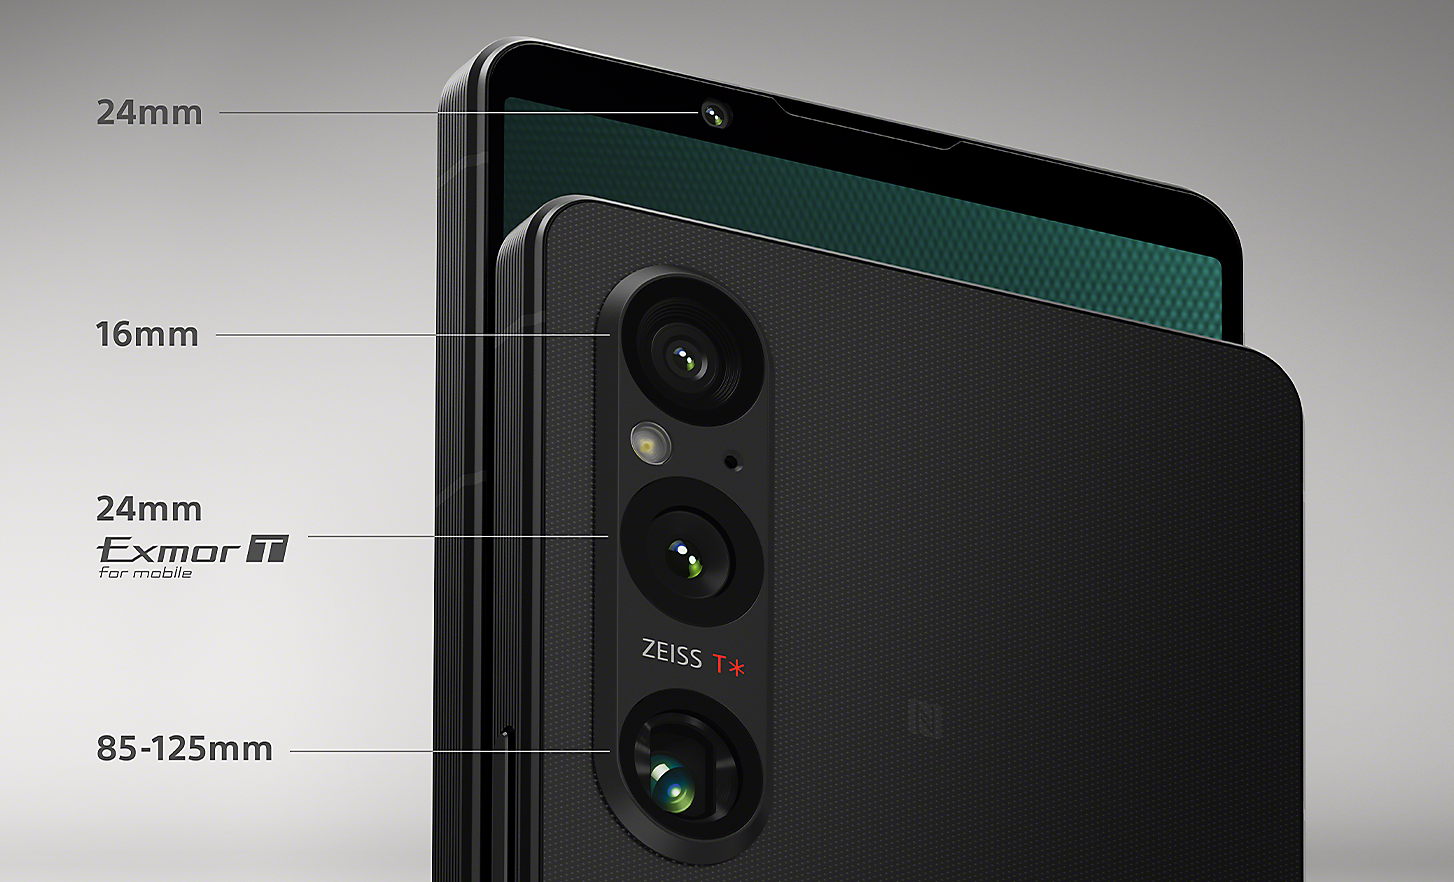 Obrázok dvoch smartfónov Xperia 1 V so štítkami označujúcimi 24 mm predný fotoaparát a tri zadné objektívy – 16 mm, 24 mm so snímačom Exmor T pre mobilné zariadenia a 85 – 125 mm